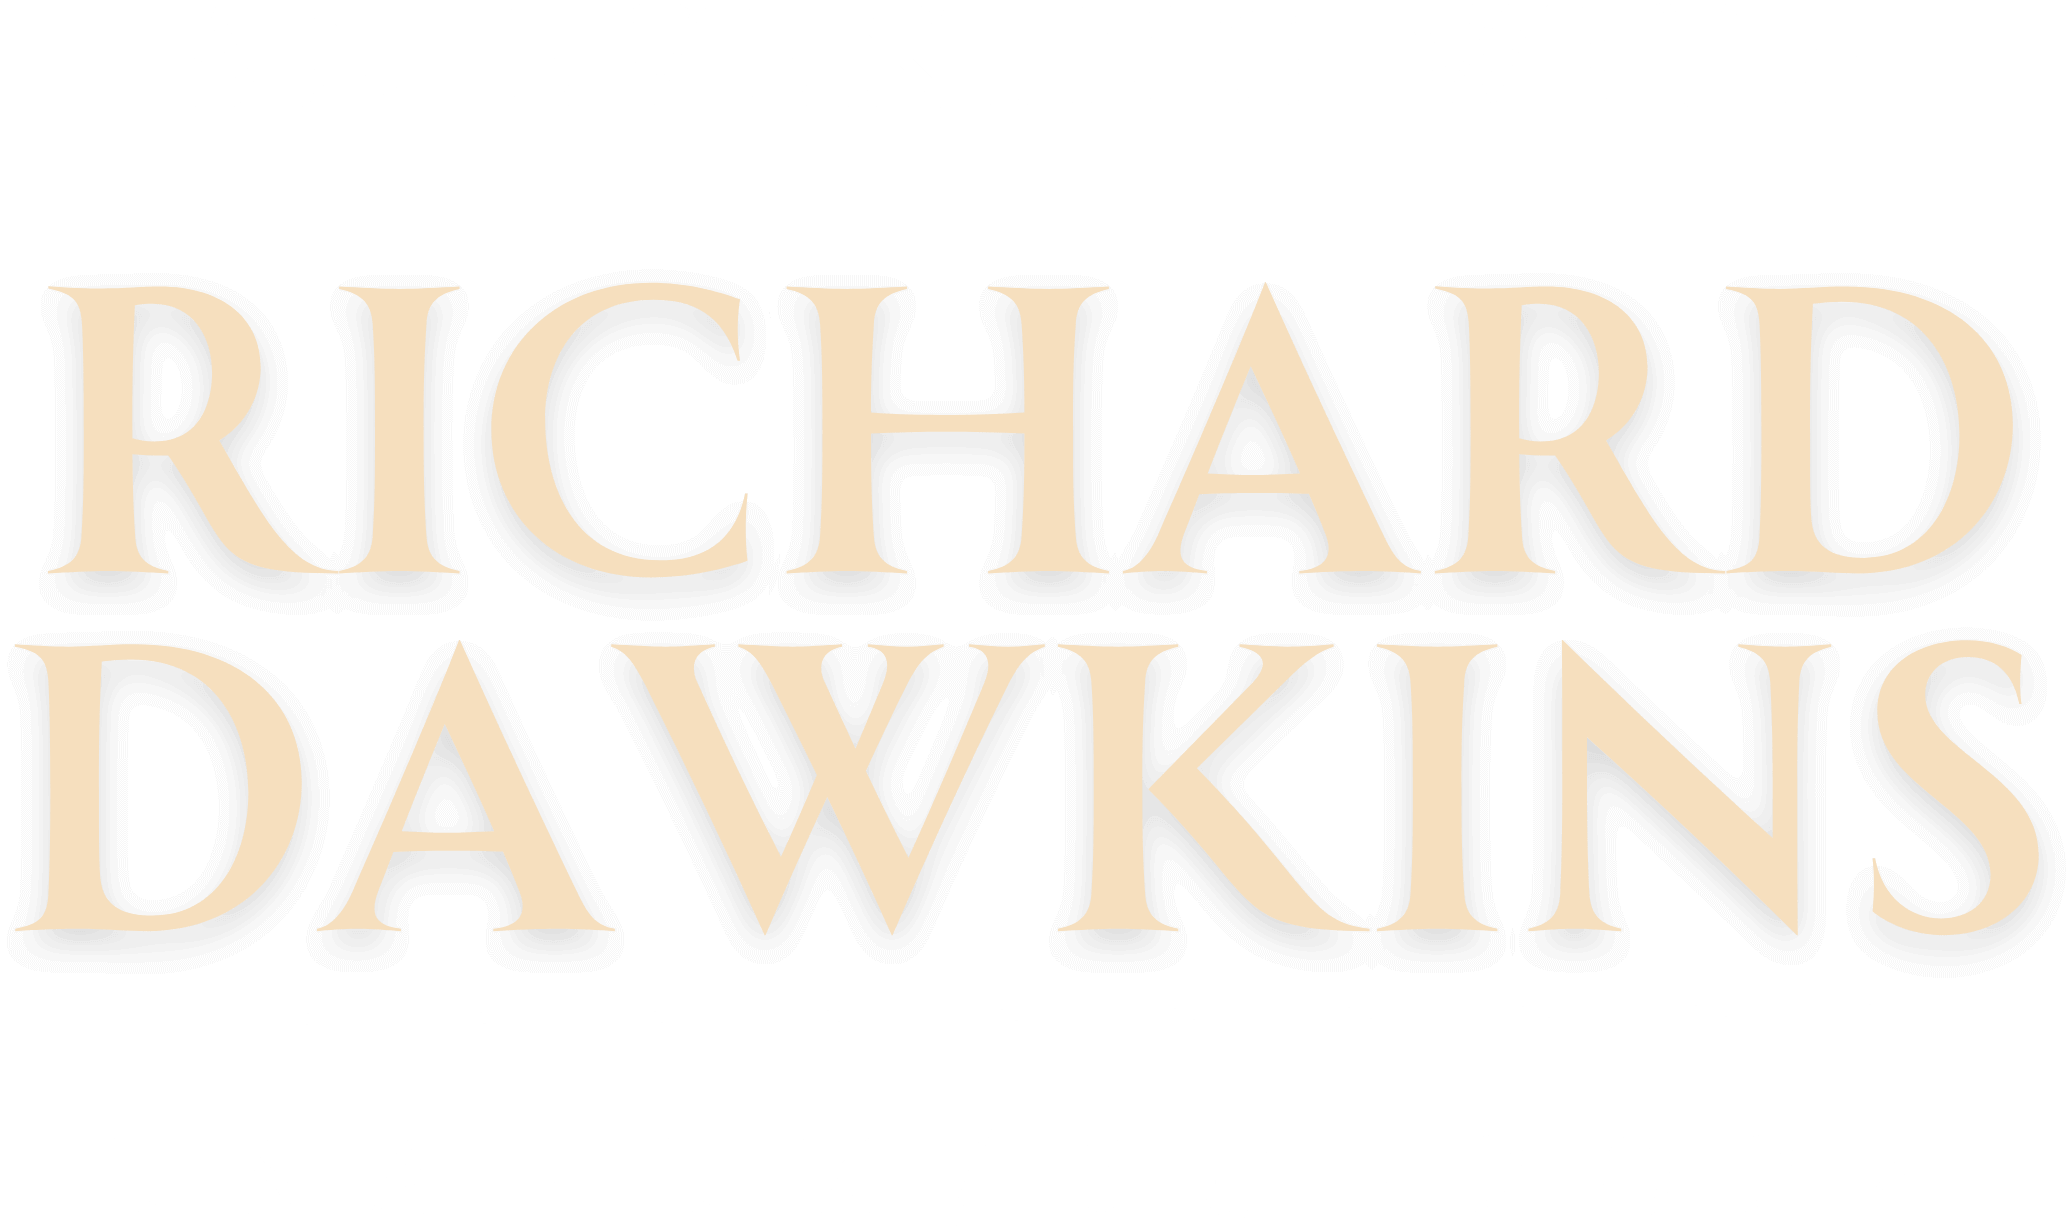 An evening with Richard Dawkins USA/UK/EU 2024